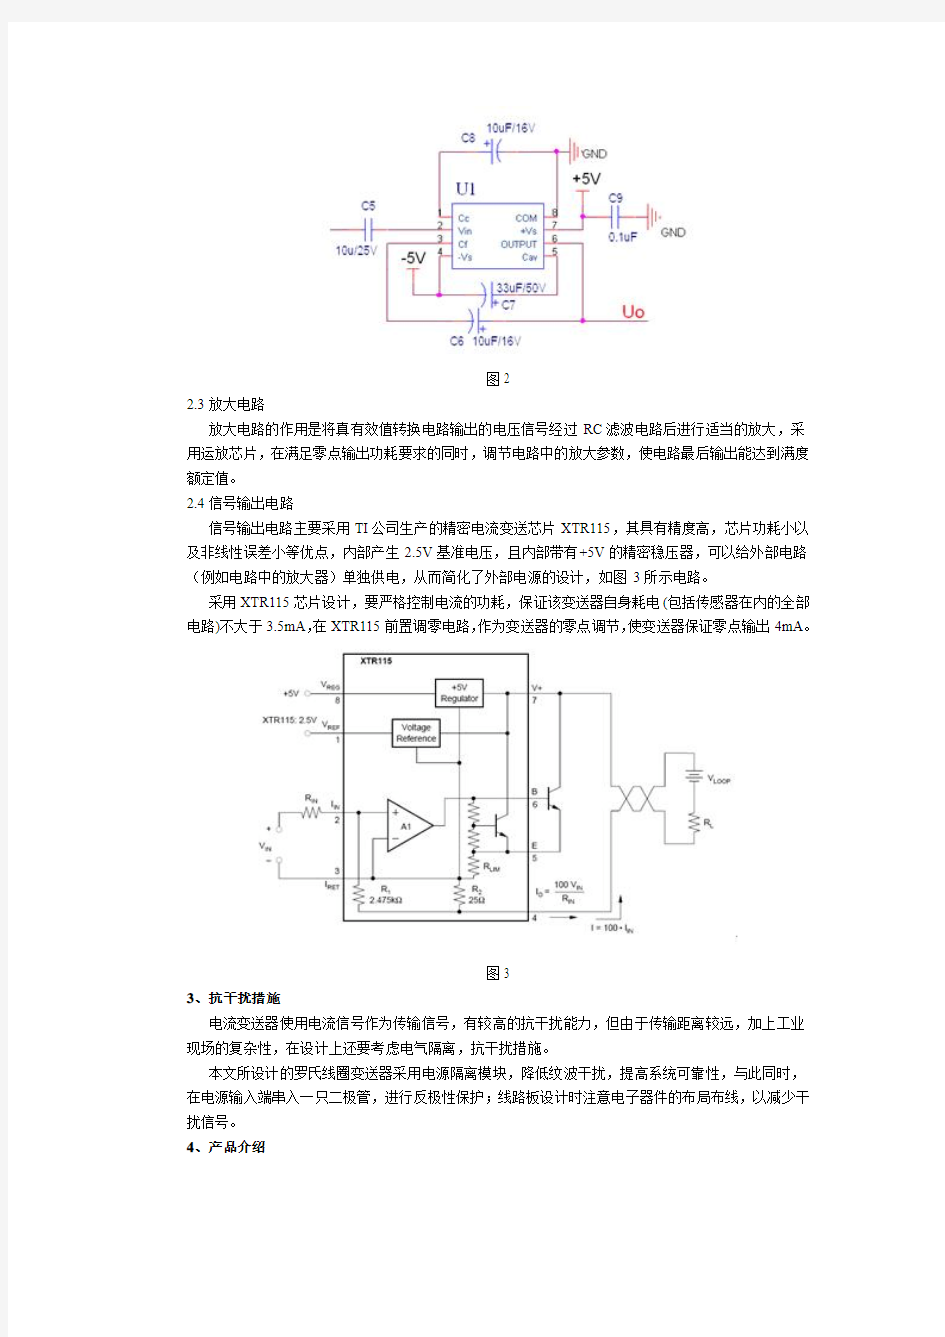 基于罗氏线圈的电流变送器设计与应用-刘静